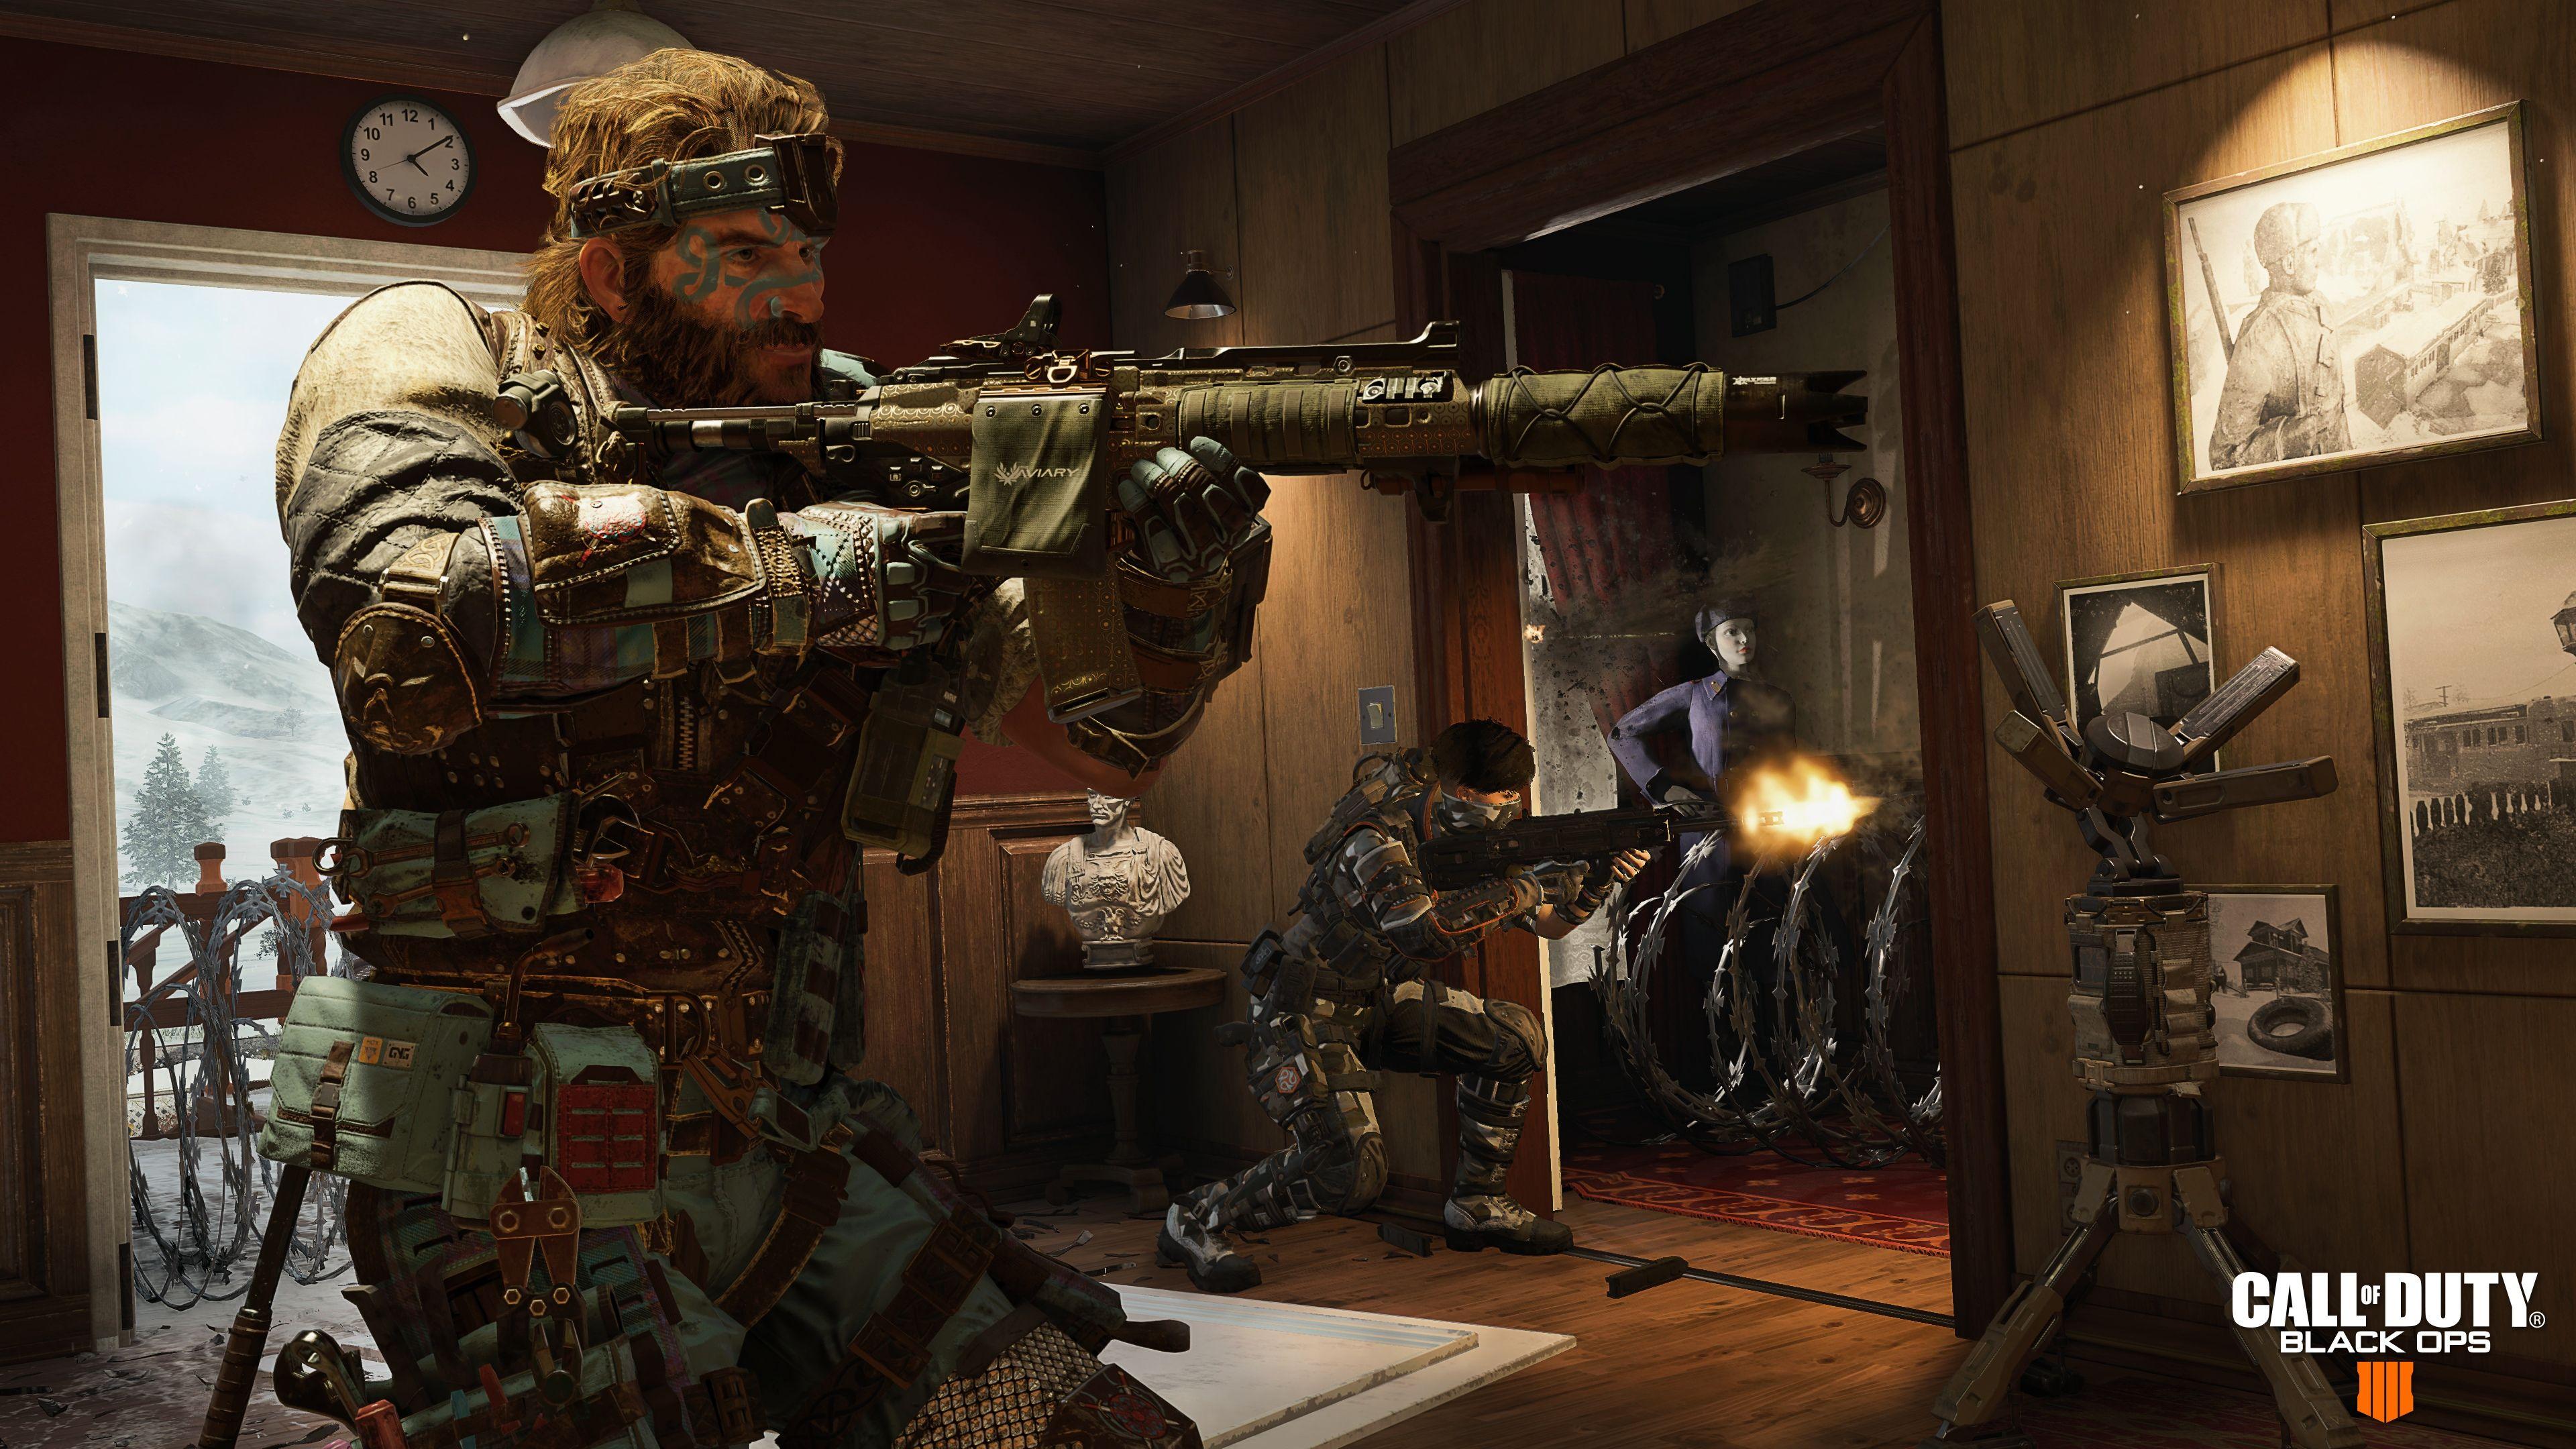 Hình nền 3840x2160 Hình nền trò chơi 4k Nuketown Call Of Duty Black Ops 4 2018, Hình nền 4k, Hình nền Call Of Duty Black Ops 4, Hình nền Call Of Duty, Hình nền trò chơi, Hình nền hd, Hình nền trò chơi Pc, Trò chơi Ps